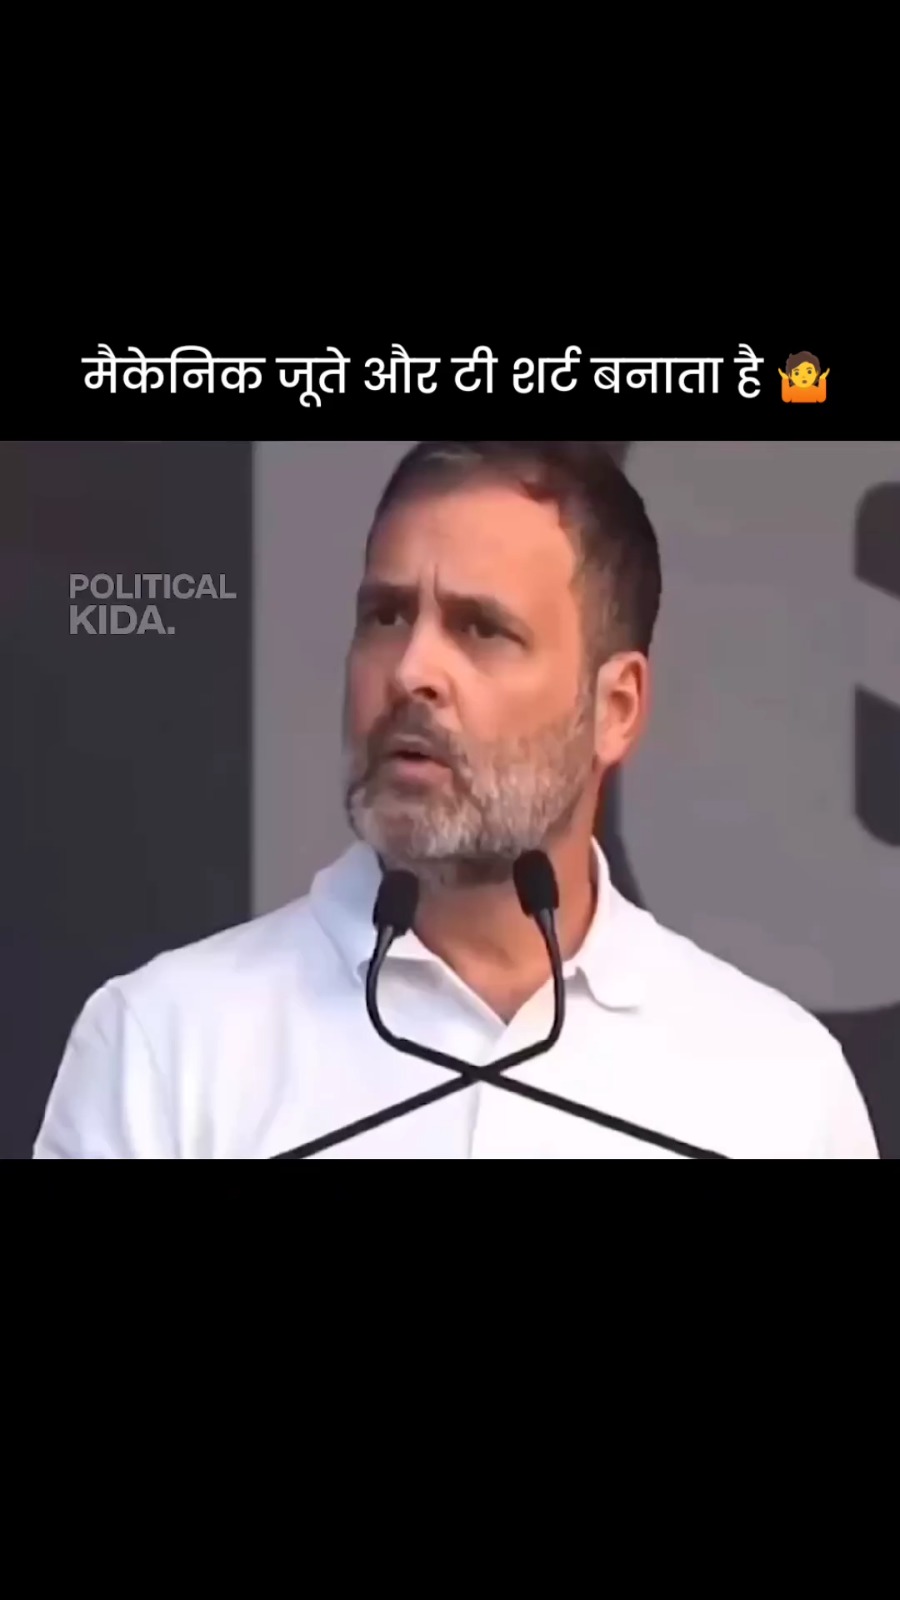 Rahul Gandhi being Rahul Gandhi 😂